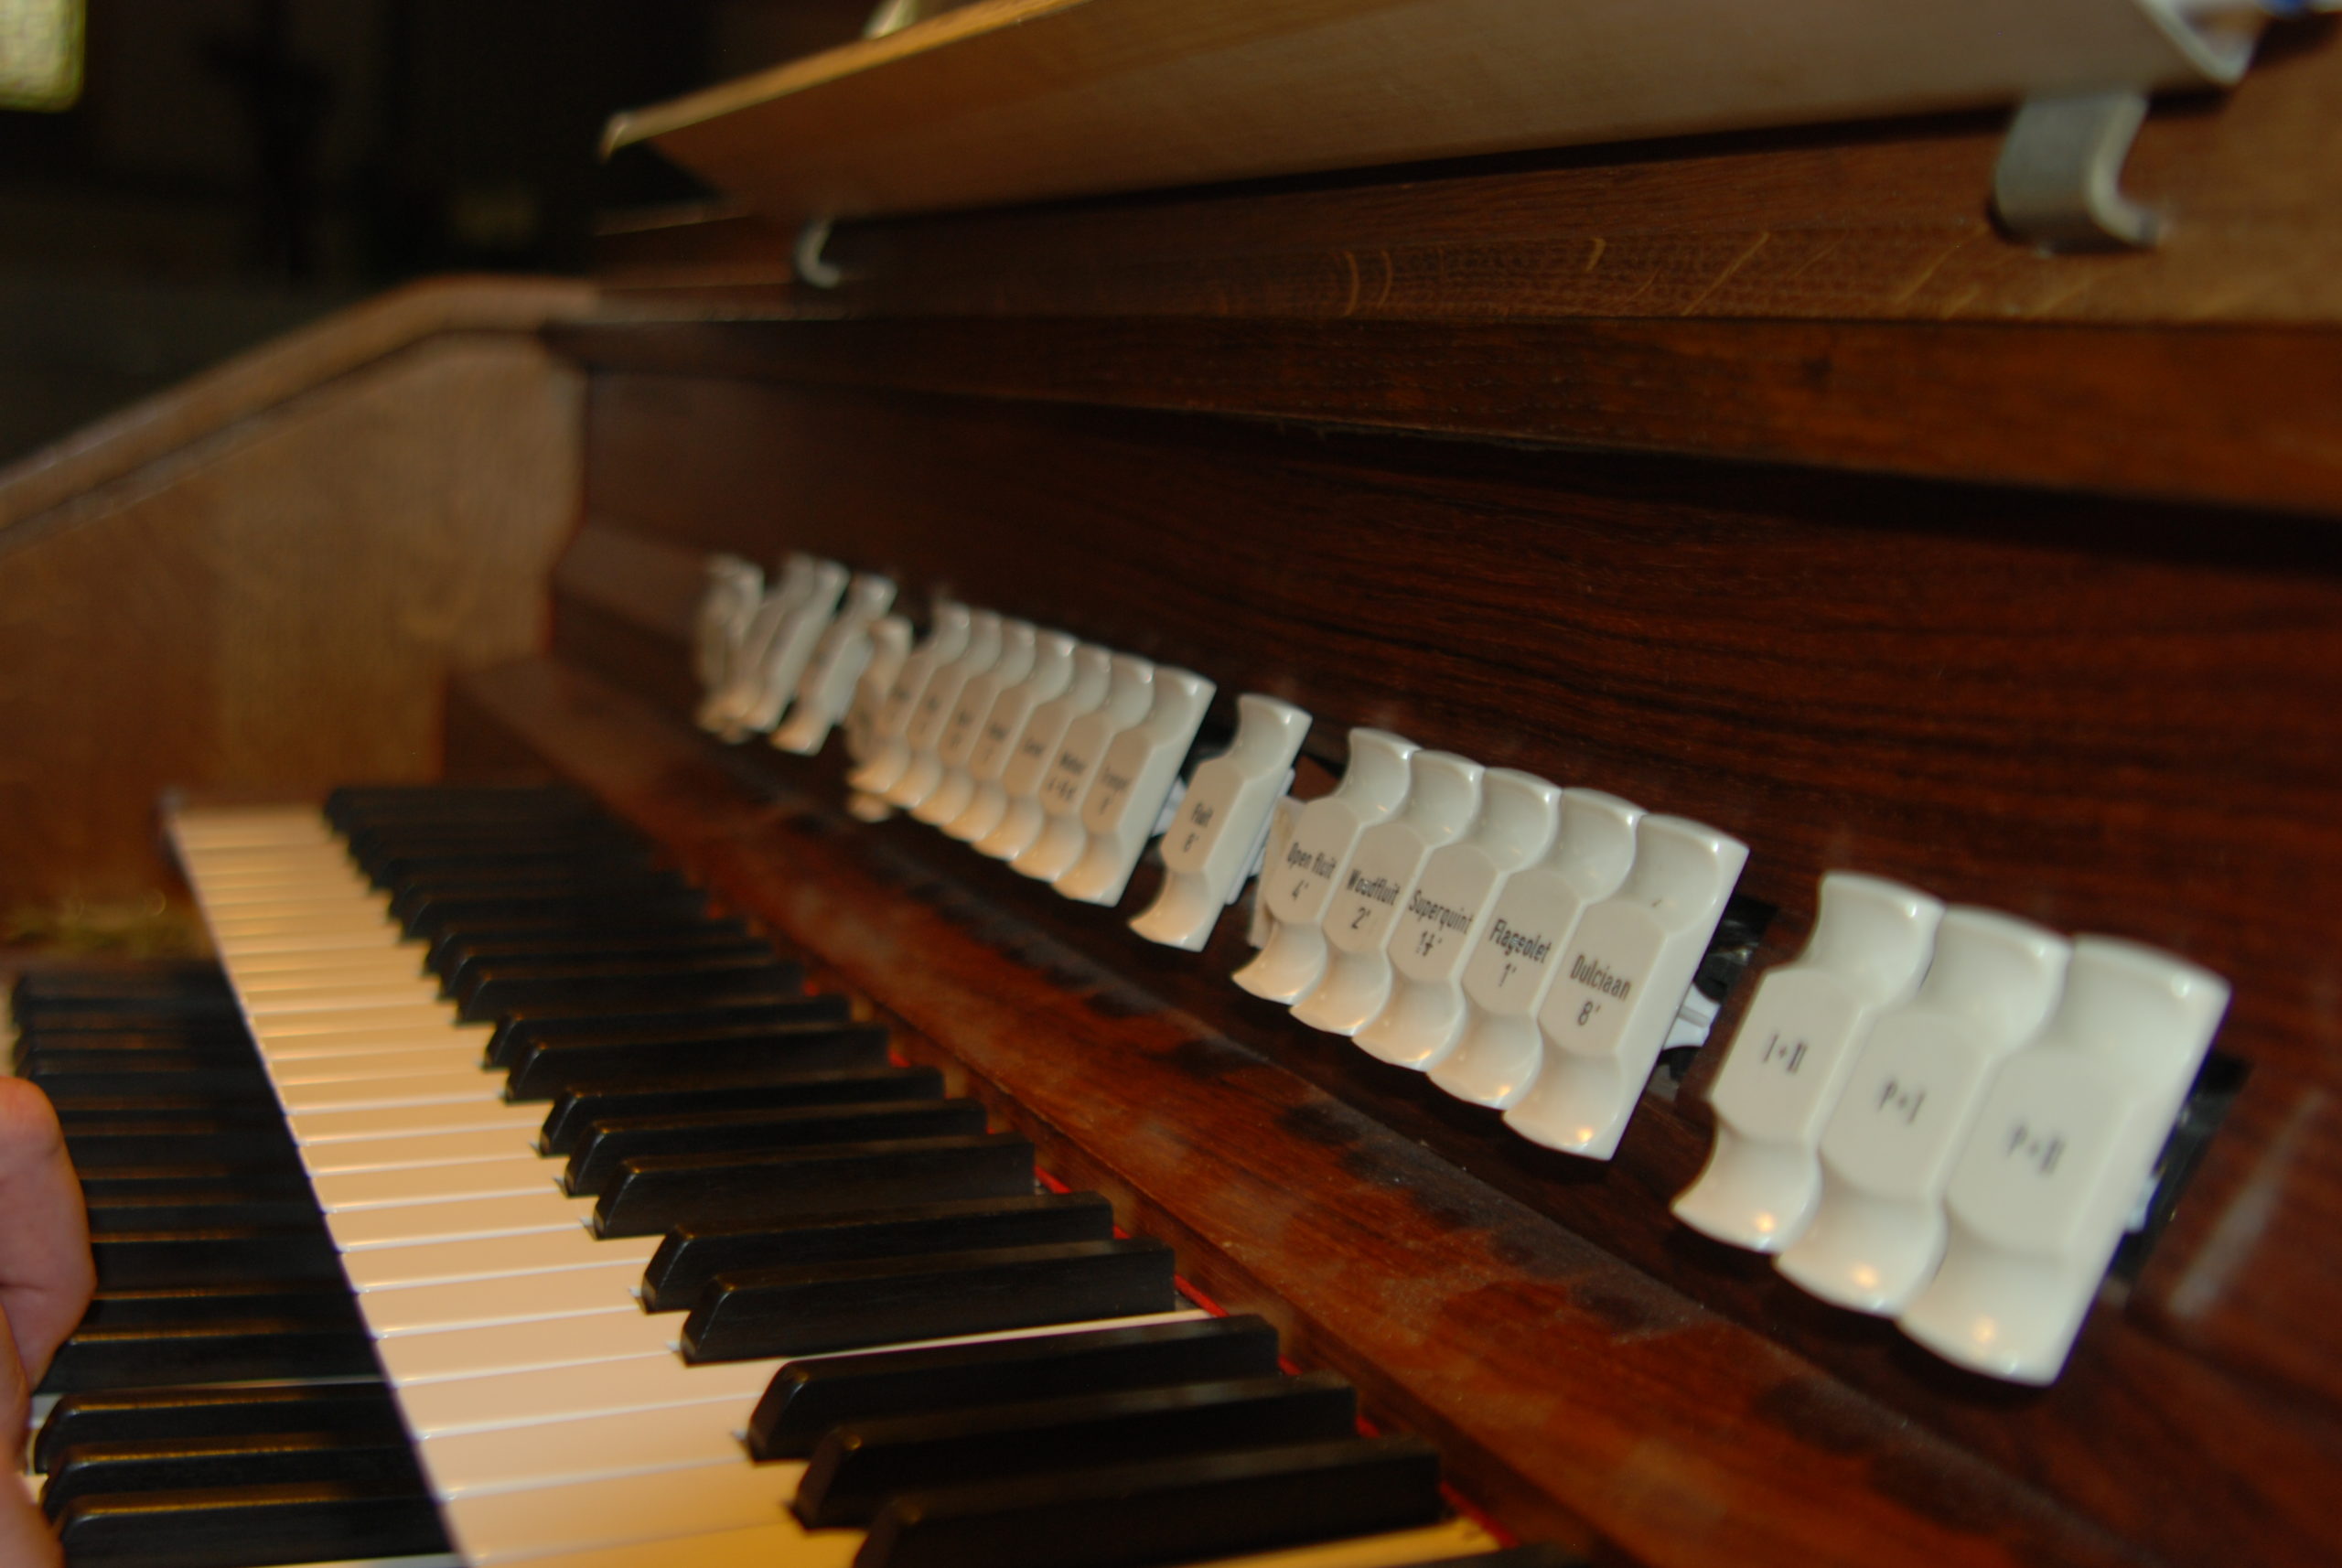 Borne-orgel14